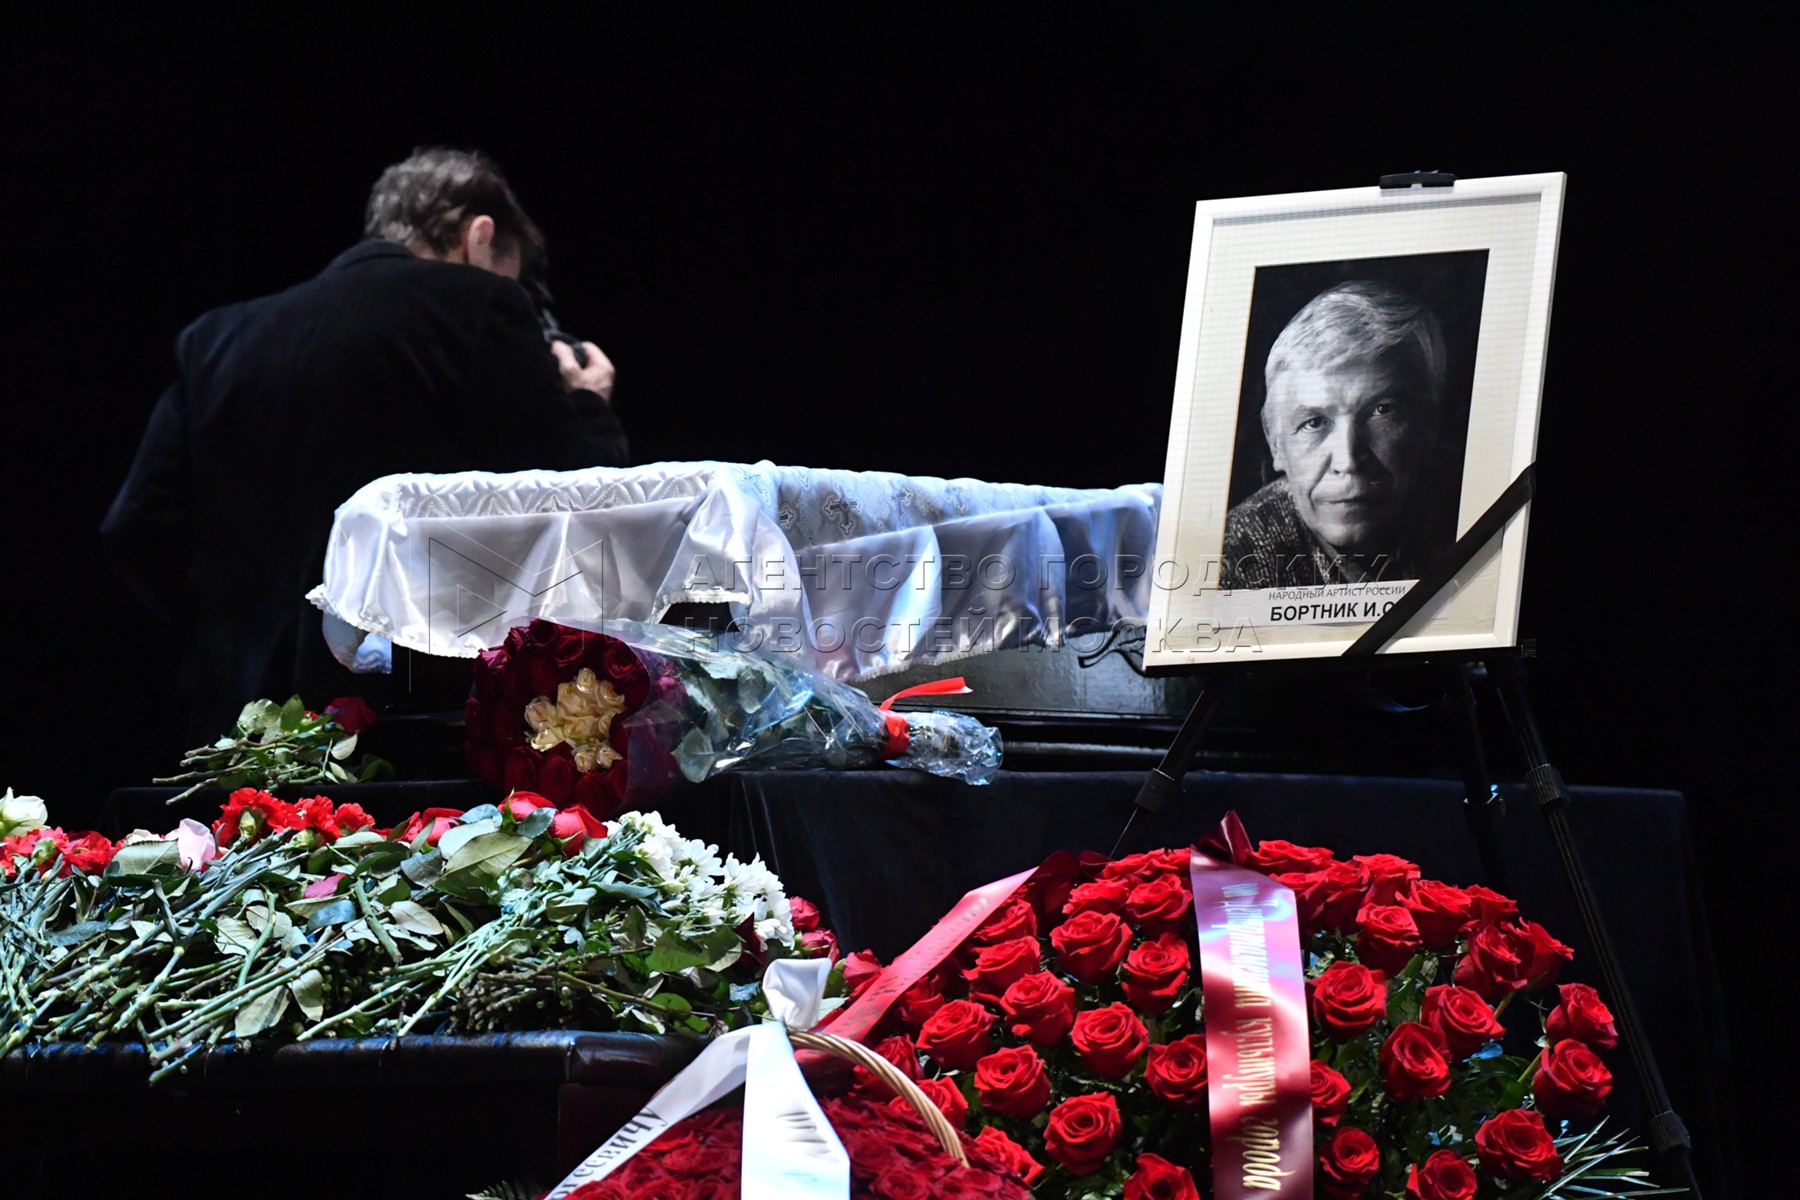 Похороны прощание Иван Бортник